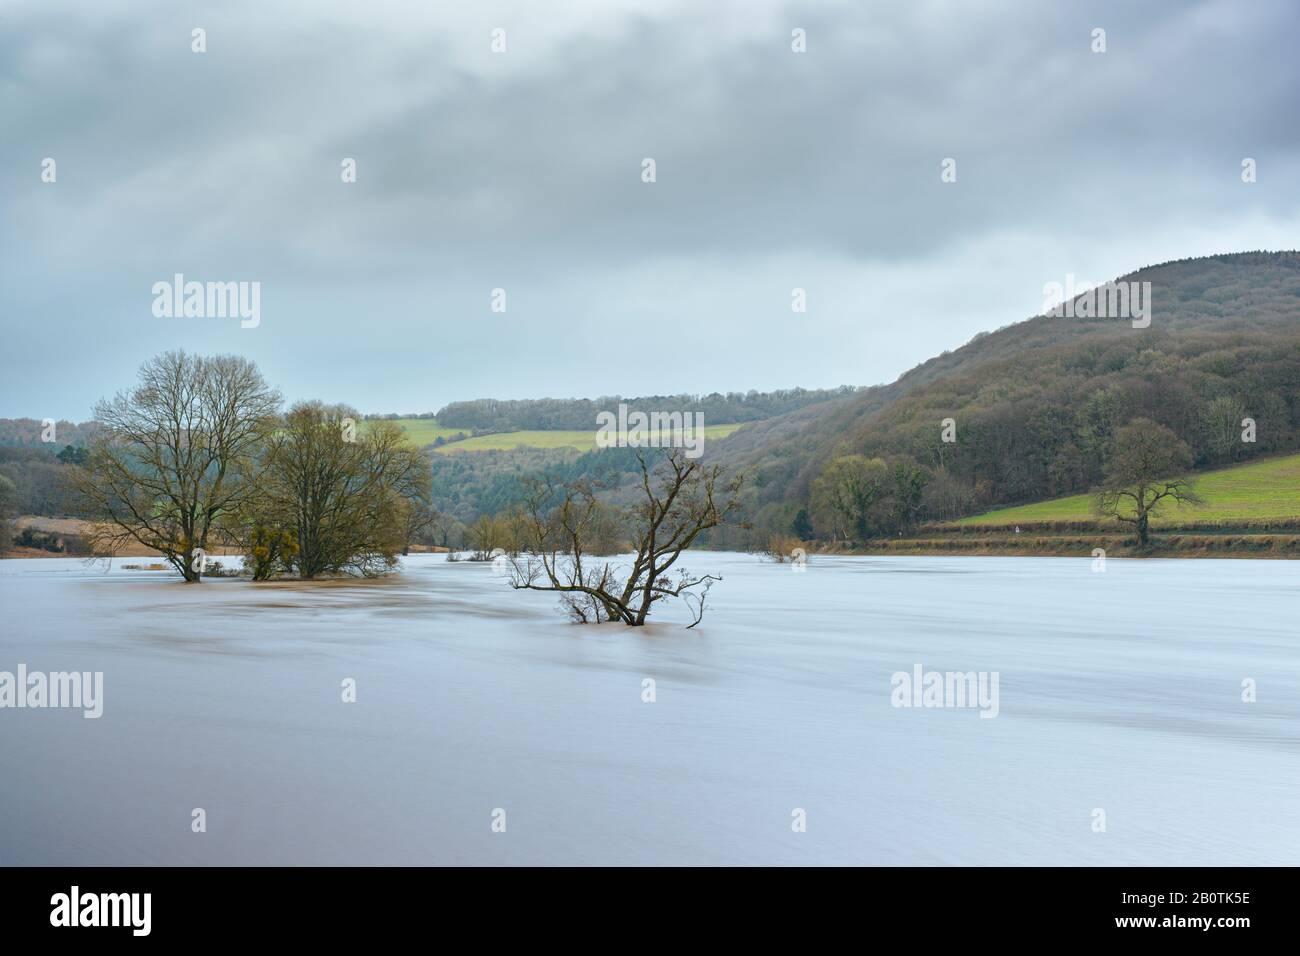 La rivière Wye en forme de spate à Bigsweir, à la frontière du Monbucshire - Gloucestershire. Février 2020. Banque D'Images